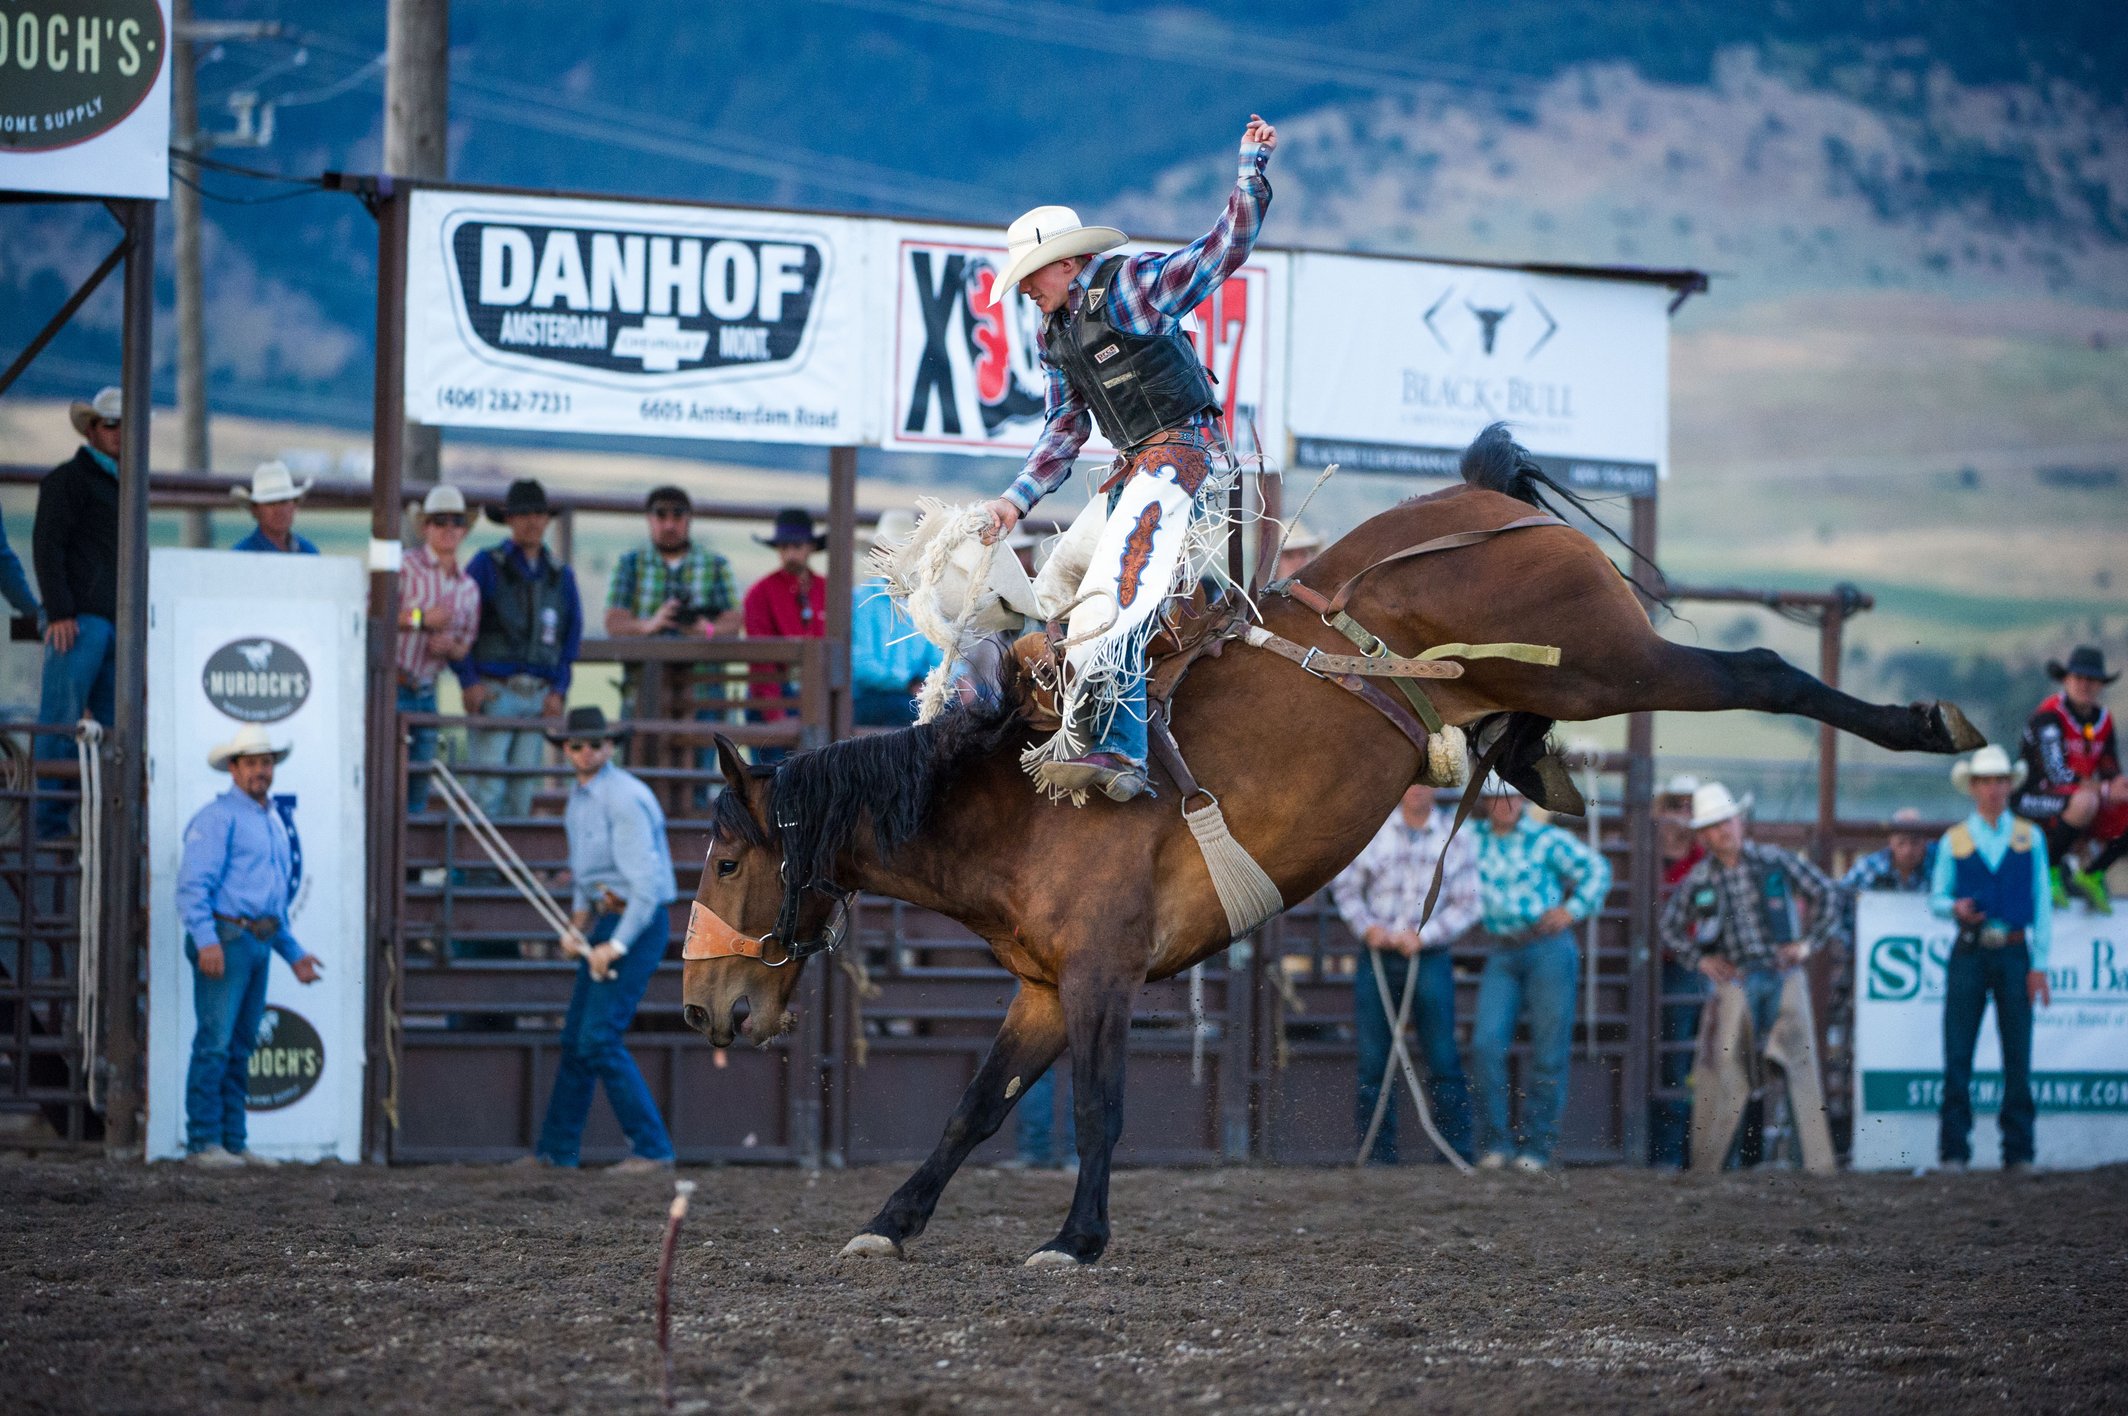 The Best Montana Rodeos Near Bozeman This Summer